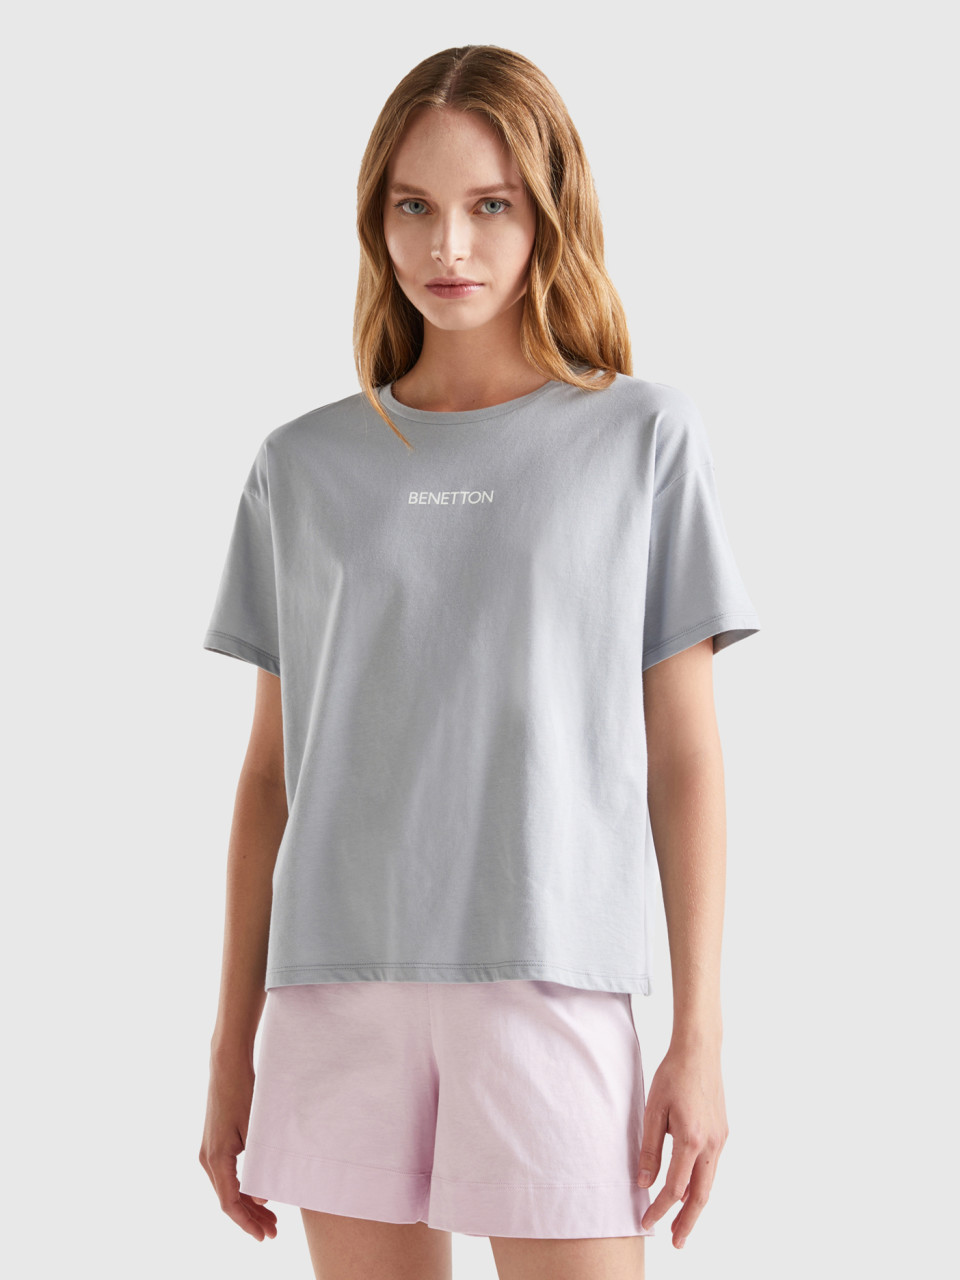 Benetton, 100% Cotton T-shirt, Light Gray, Women